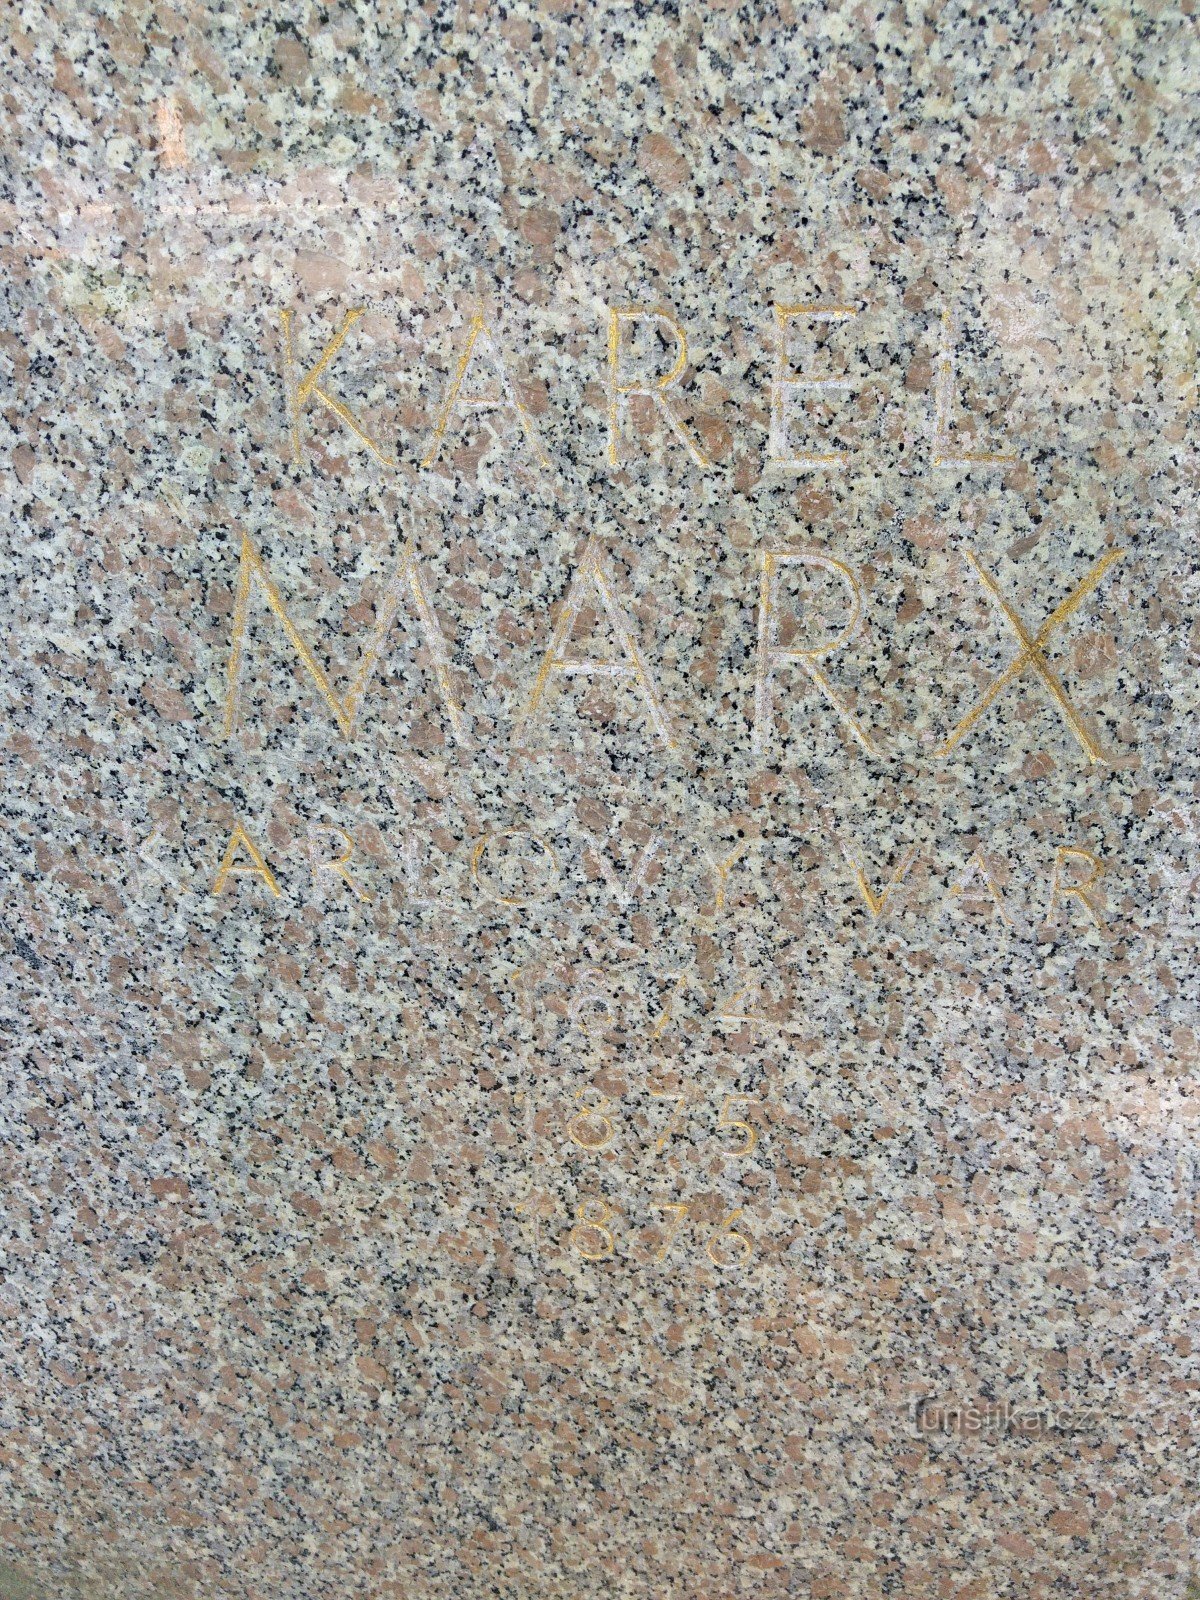 Monument to Karl Marx - Karlovy Vary